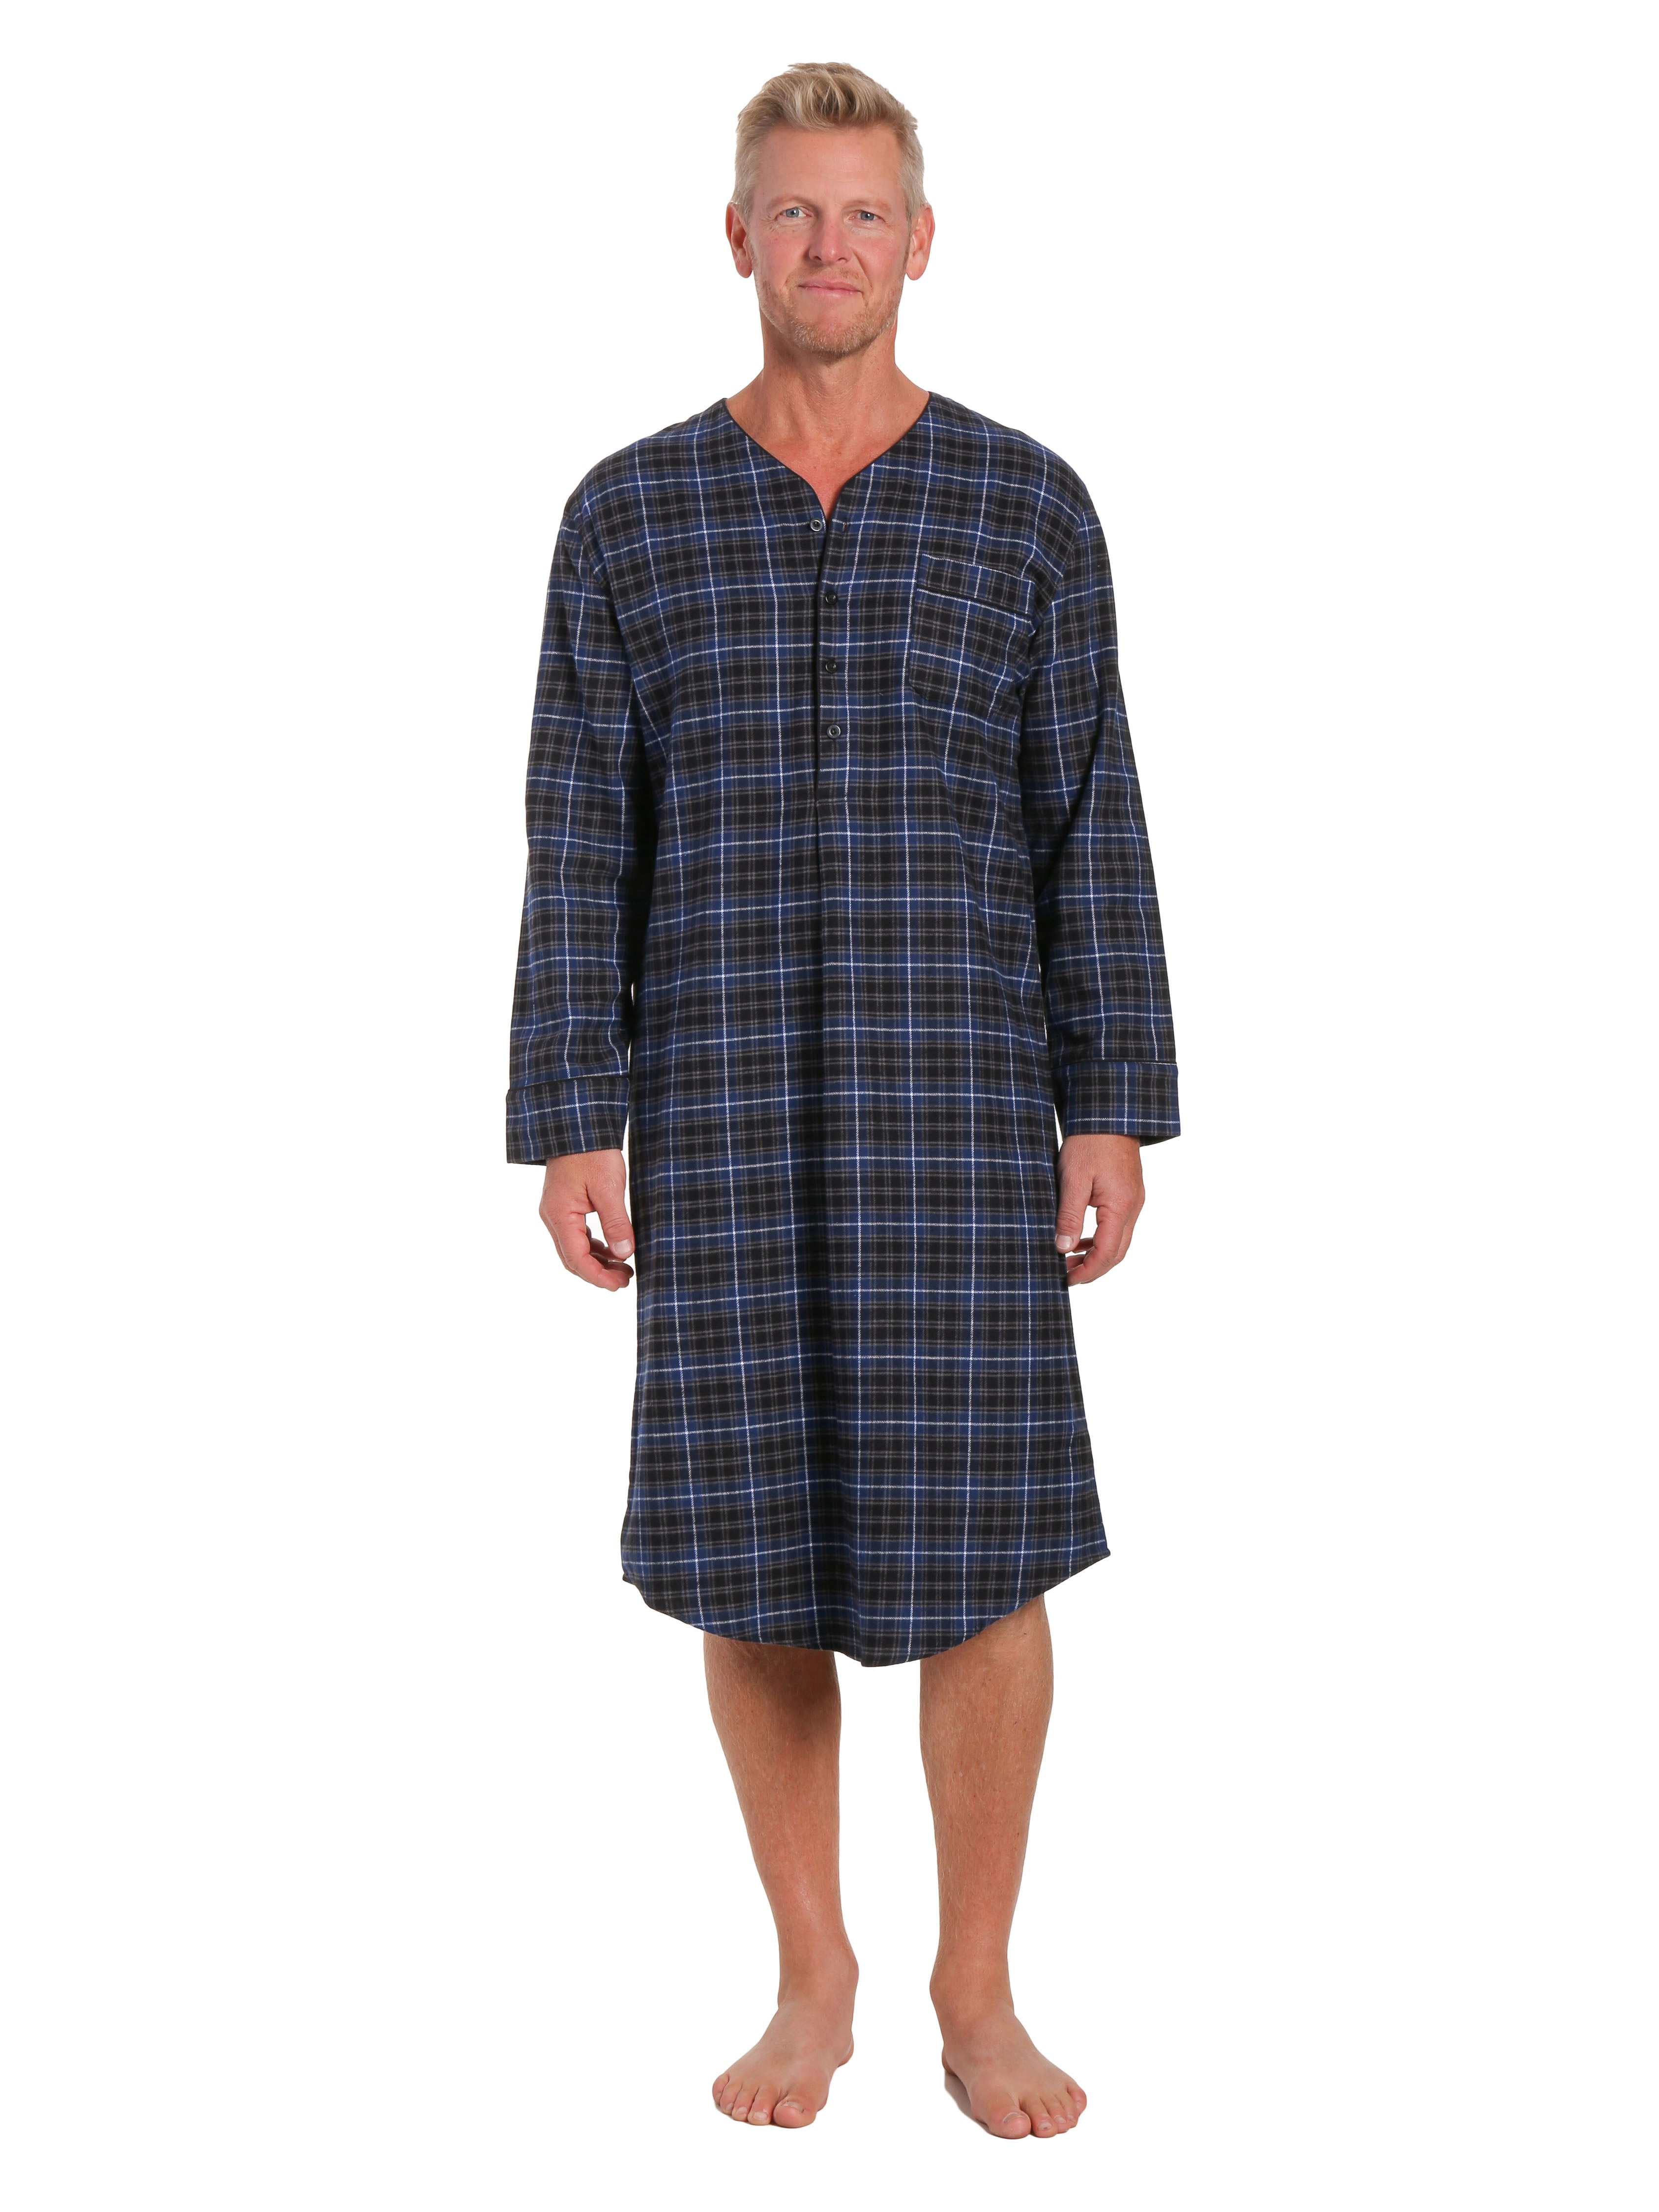 Mens 100% Cotton Flannel Nightshirt - Plaid Navy/Black